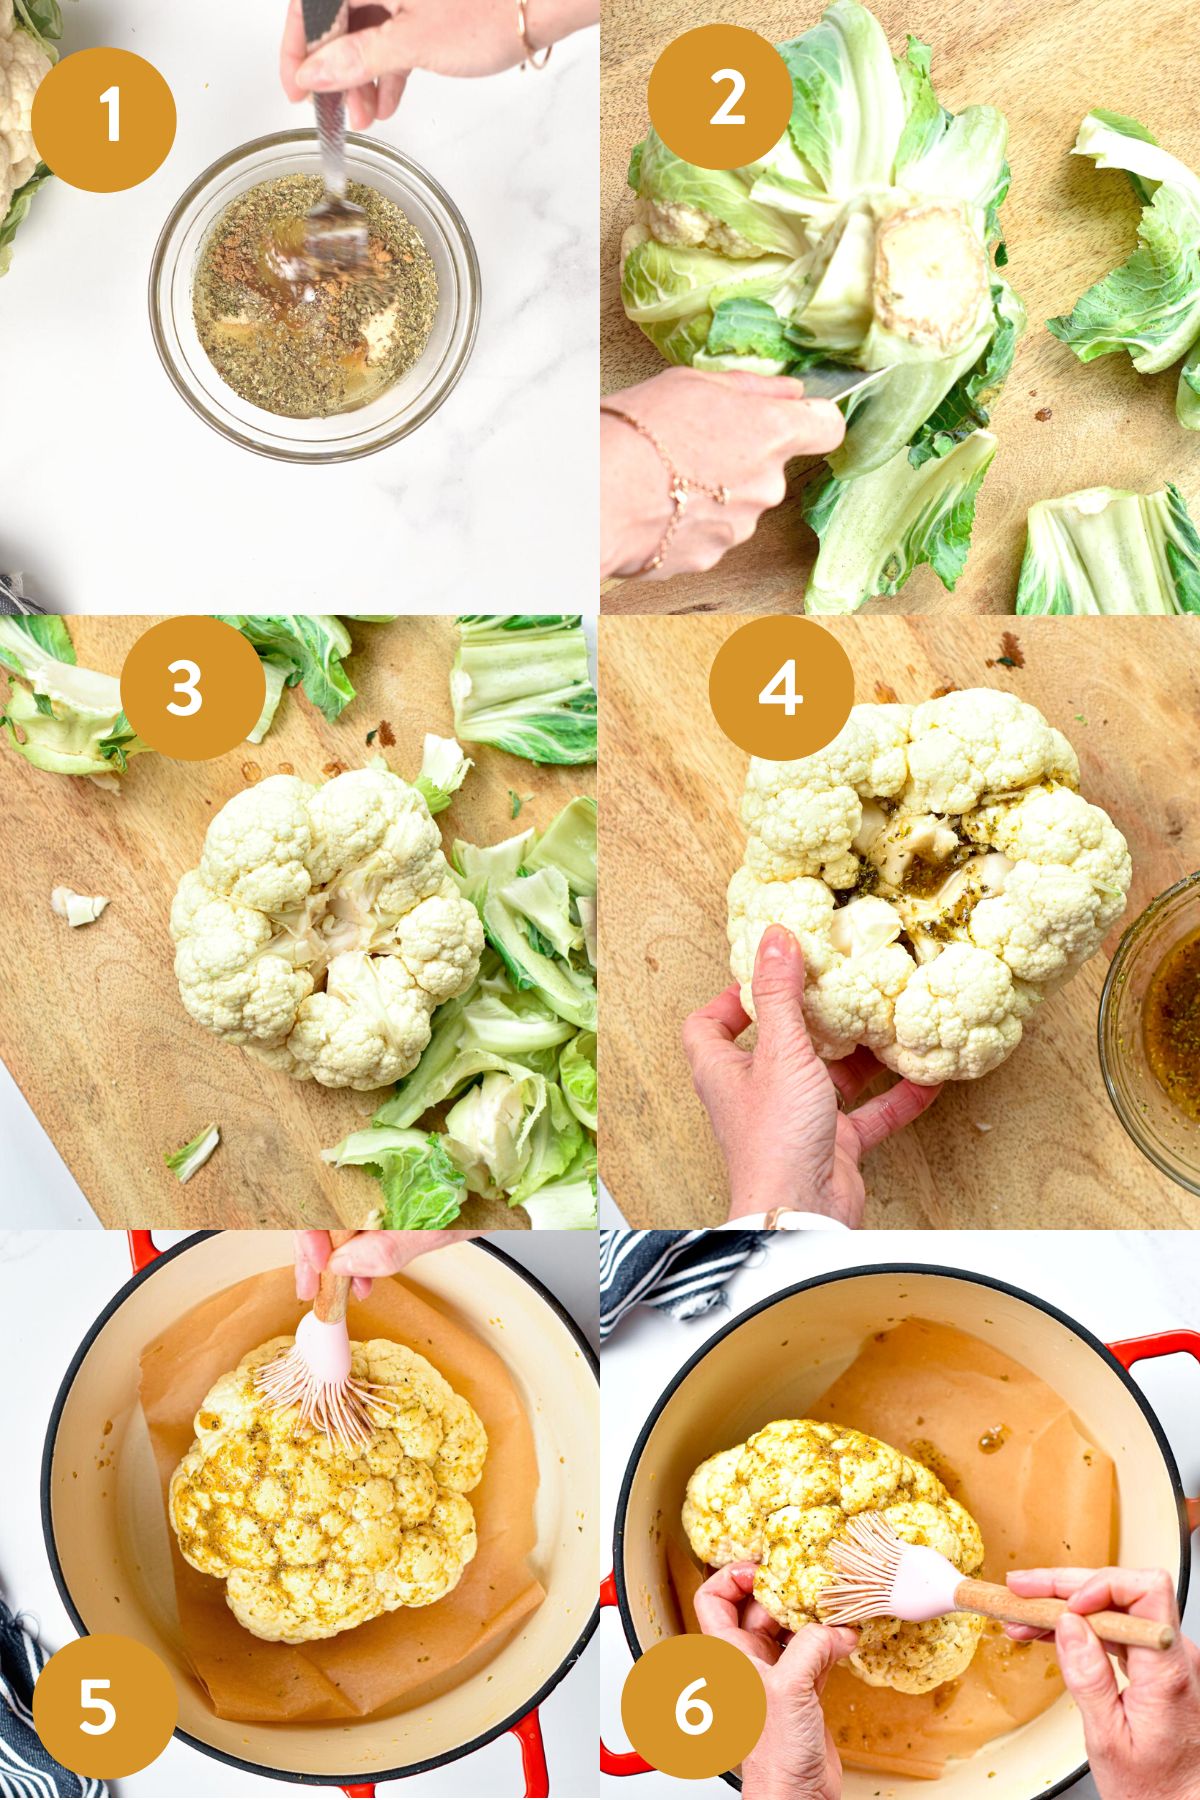 How to make Whole Roasted CauliflowerHow to make Whole Roasted Cauliflower